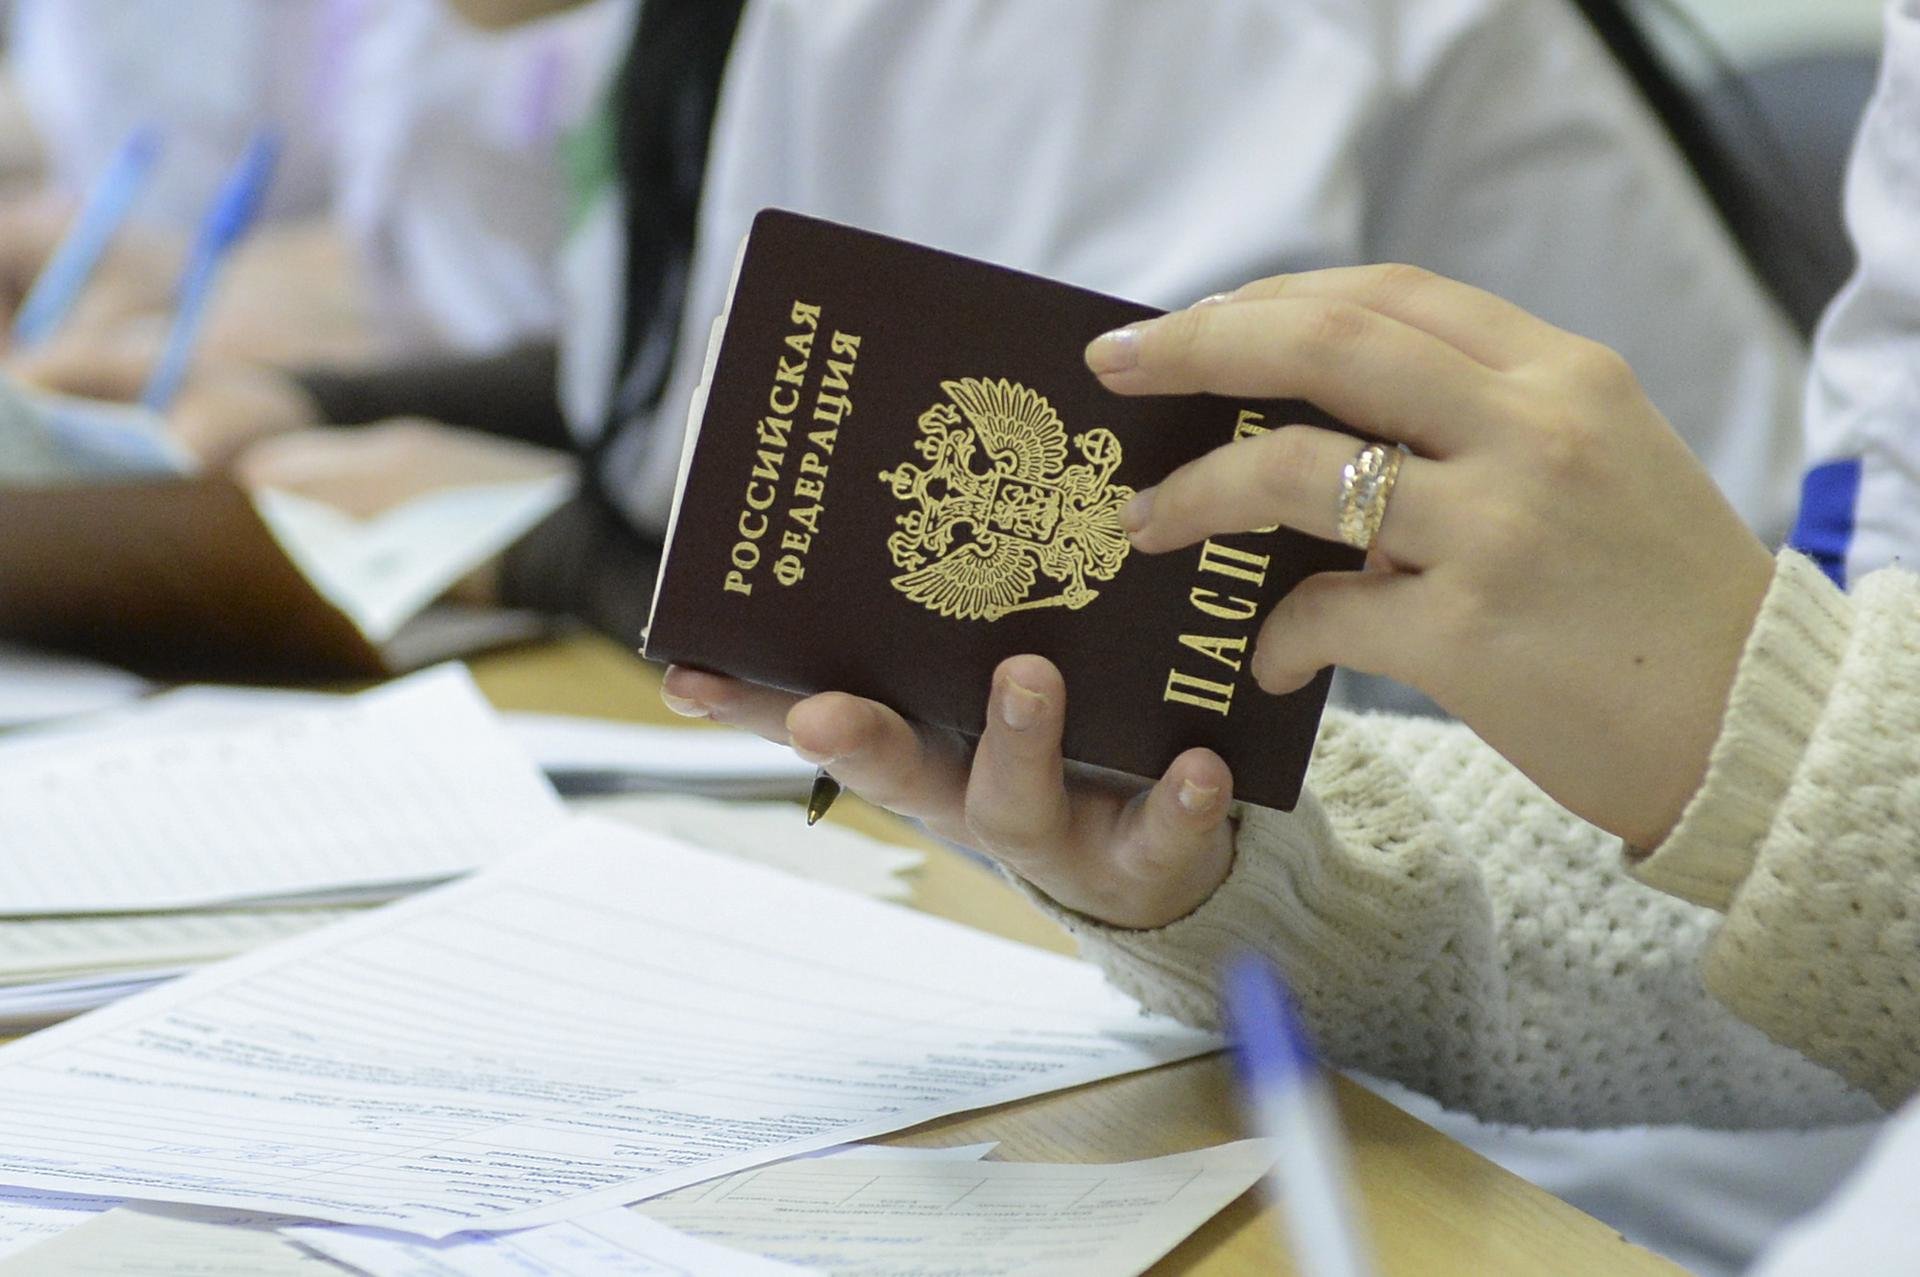 Можно ли сменить фото в паспорте по собственному желанию